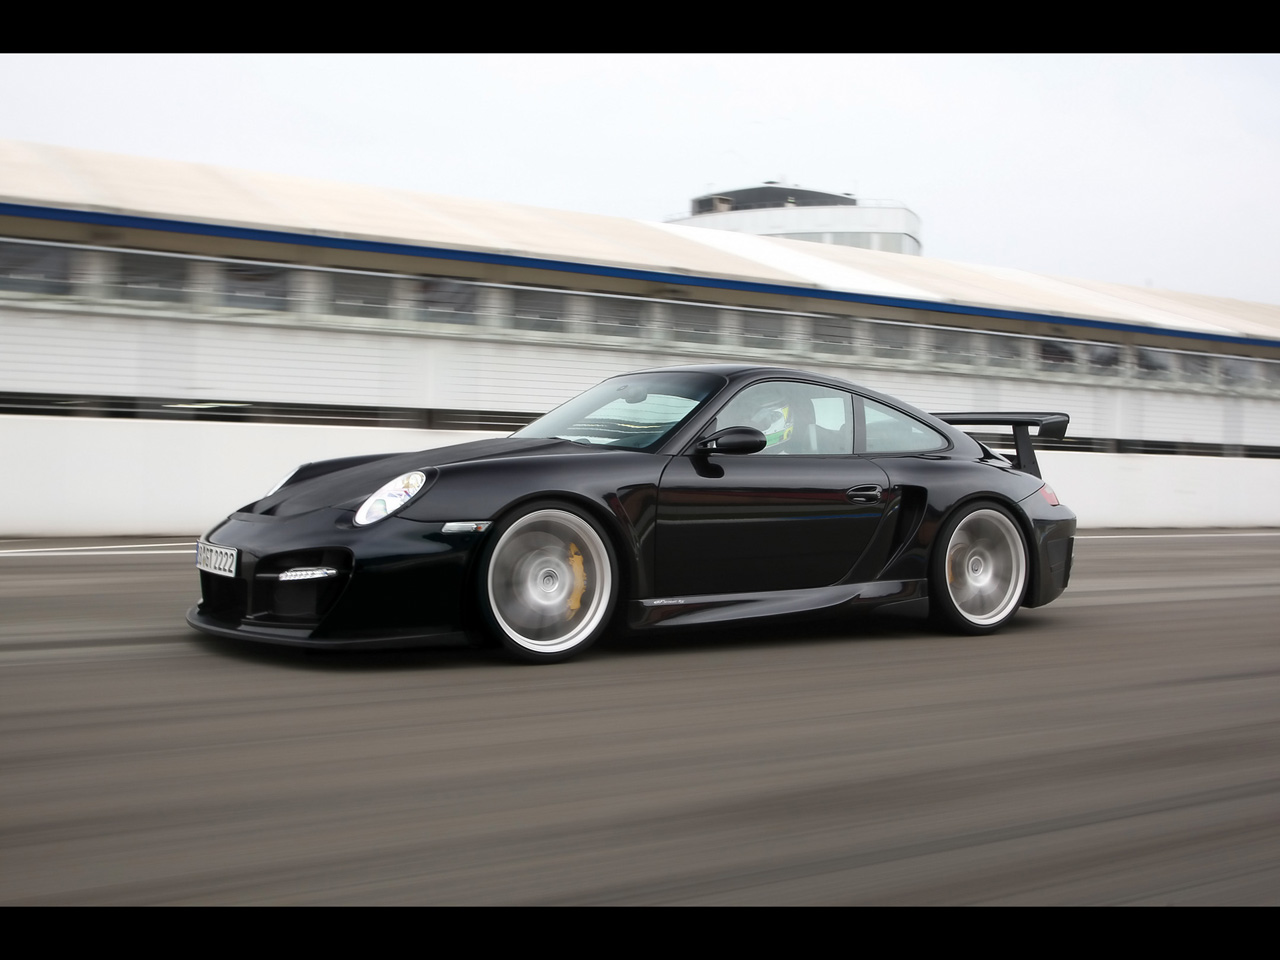 http://1.bp.blogspot.com/_mVWTOcUXltI/TS_HlK9rDwI/AAAAAAAAEz4/sVA8Akd1huw/s1600/Porsche-911-GT2-RS.jpg